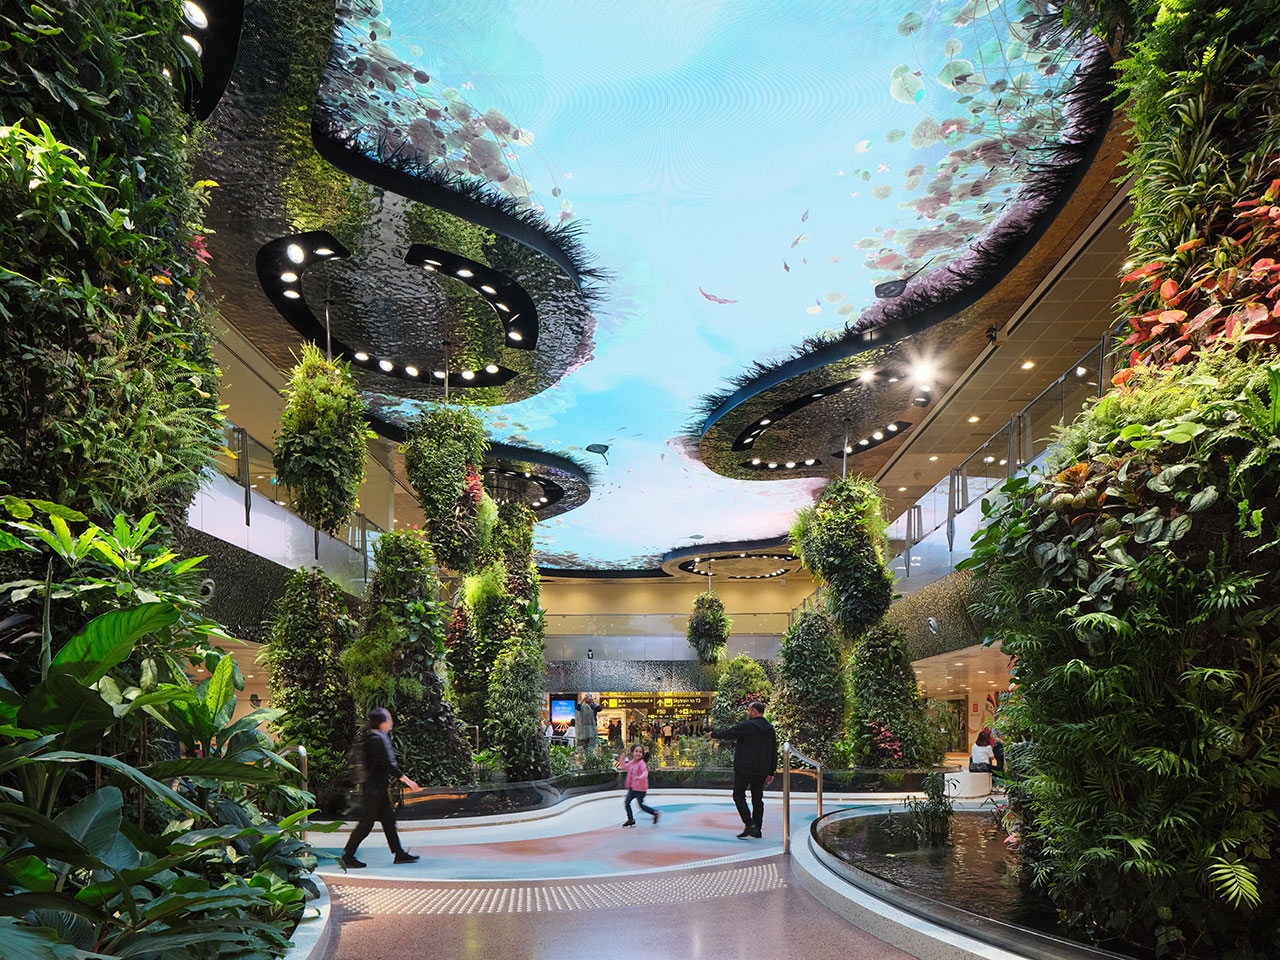 Singapore airport changi terminal boiffils garden city 2